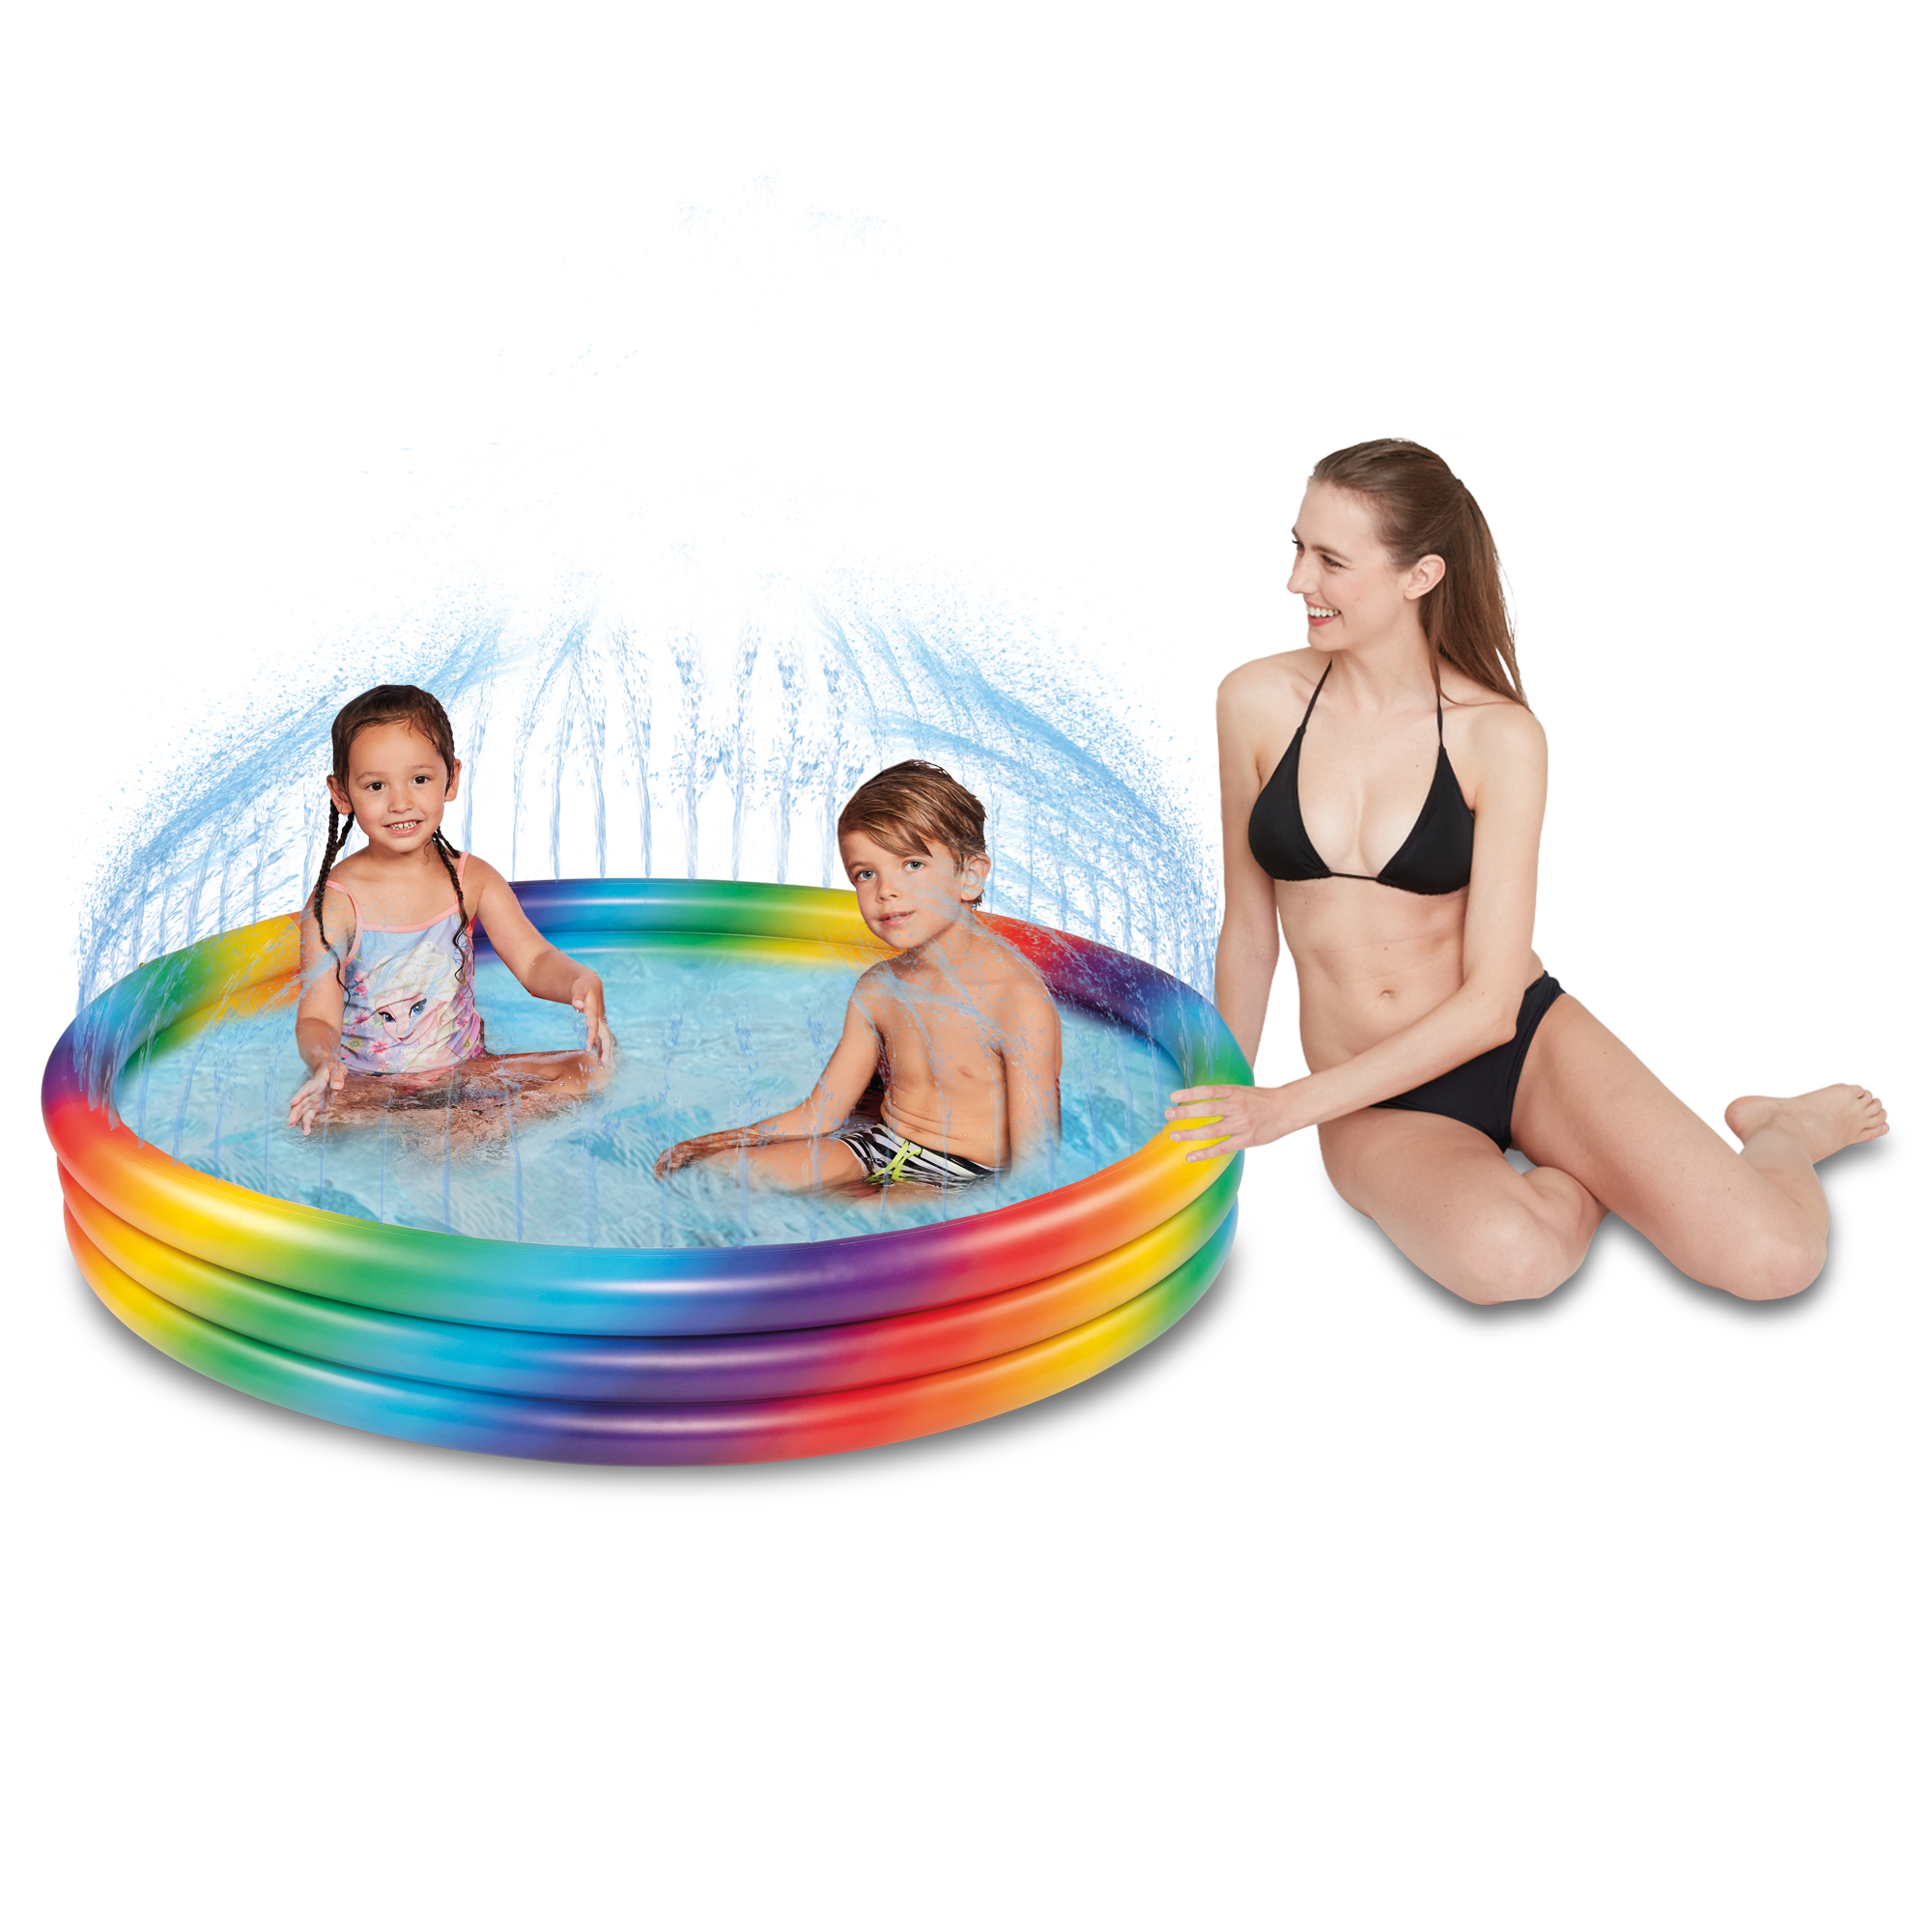 Planschbecken 'Rainbow' 150 x 25 cm mit Sprühvorrichtung + product picture